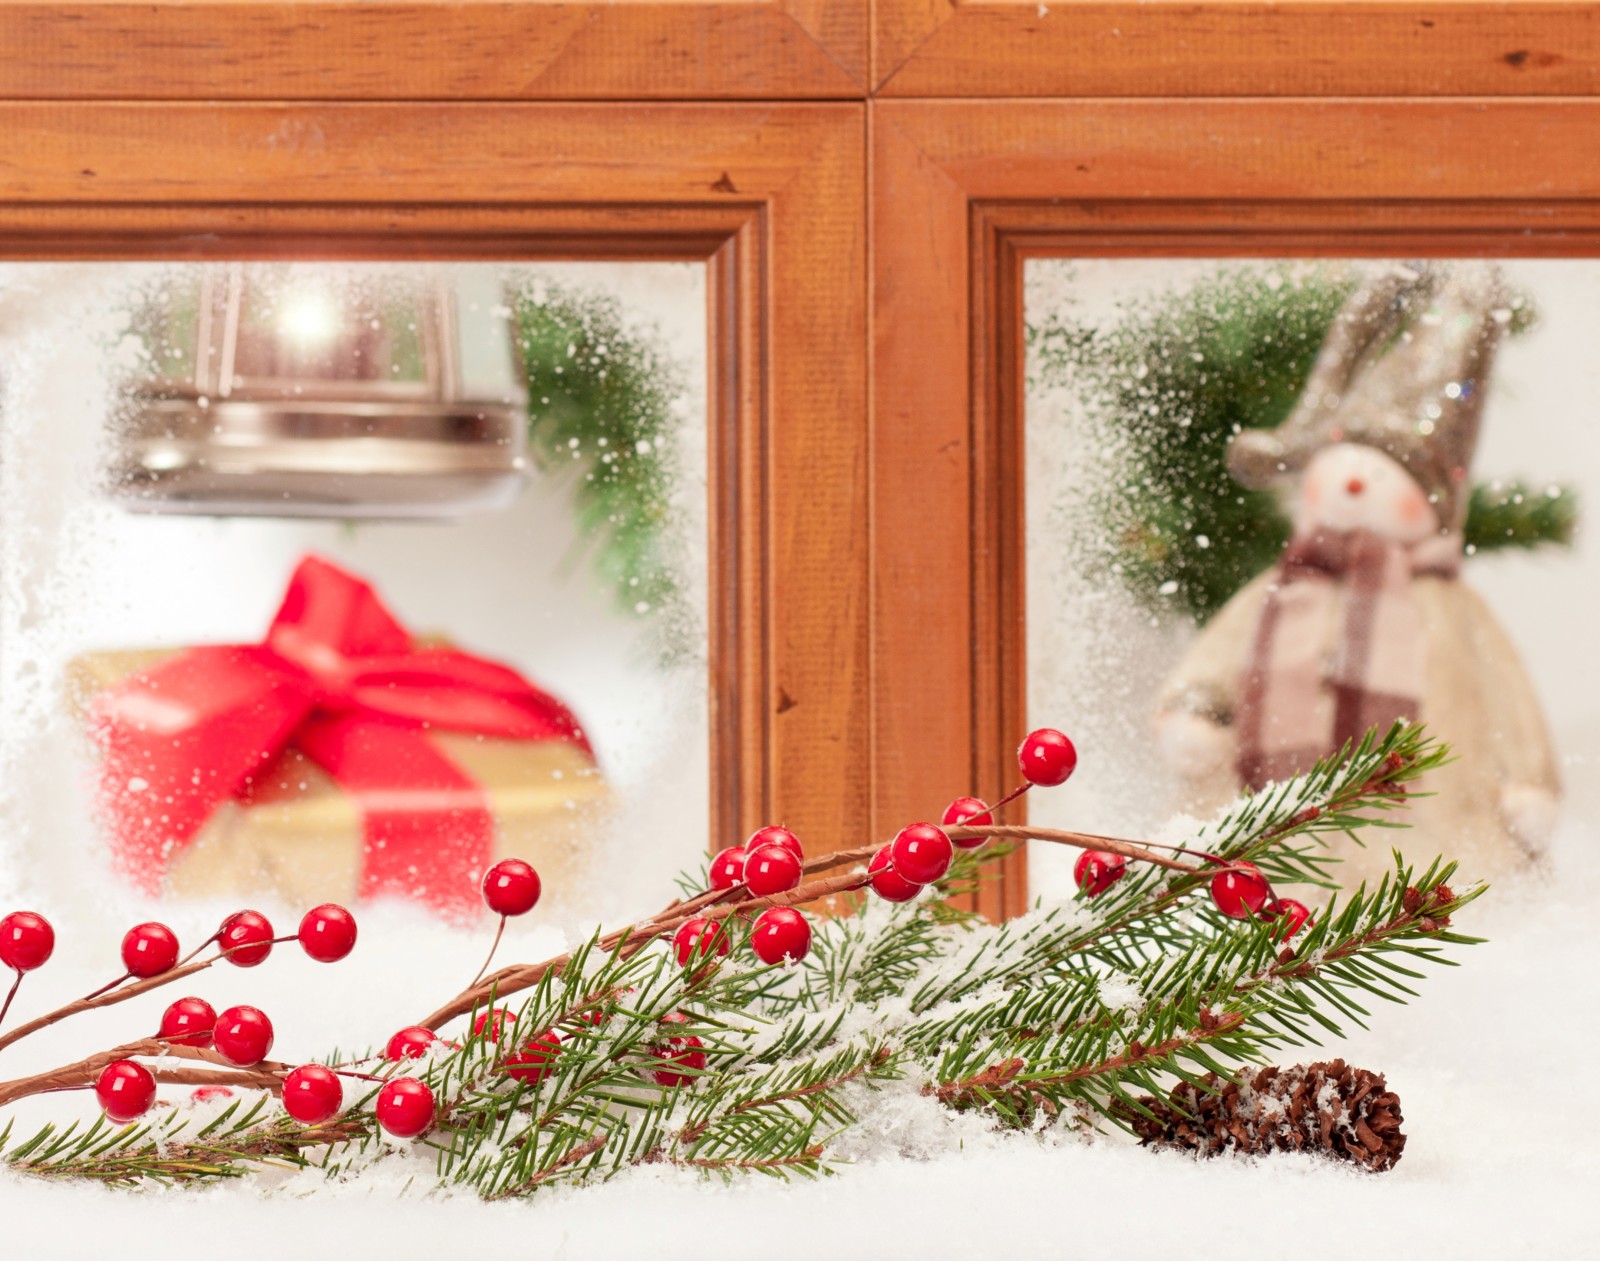 눈, 새해, 크리스마스, 장식, 명랑한, 겨울, 장난감